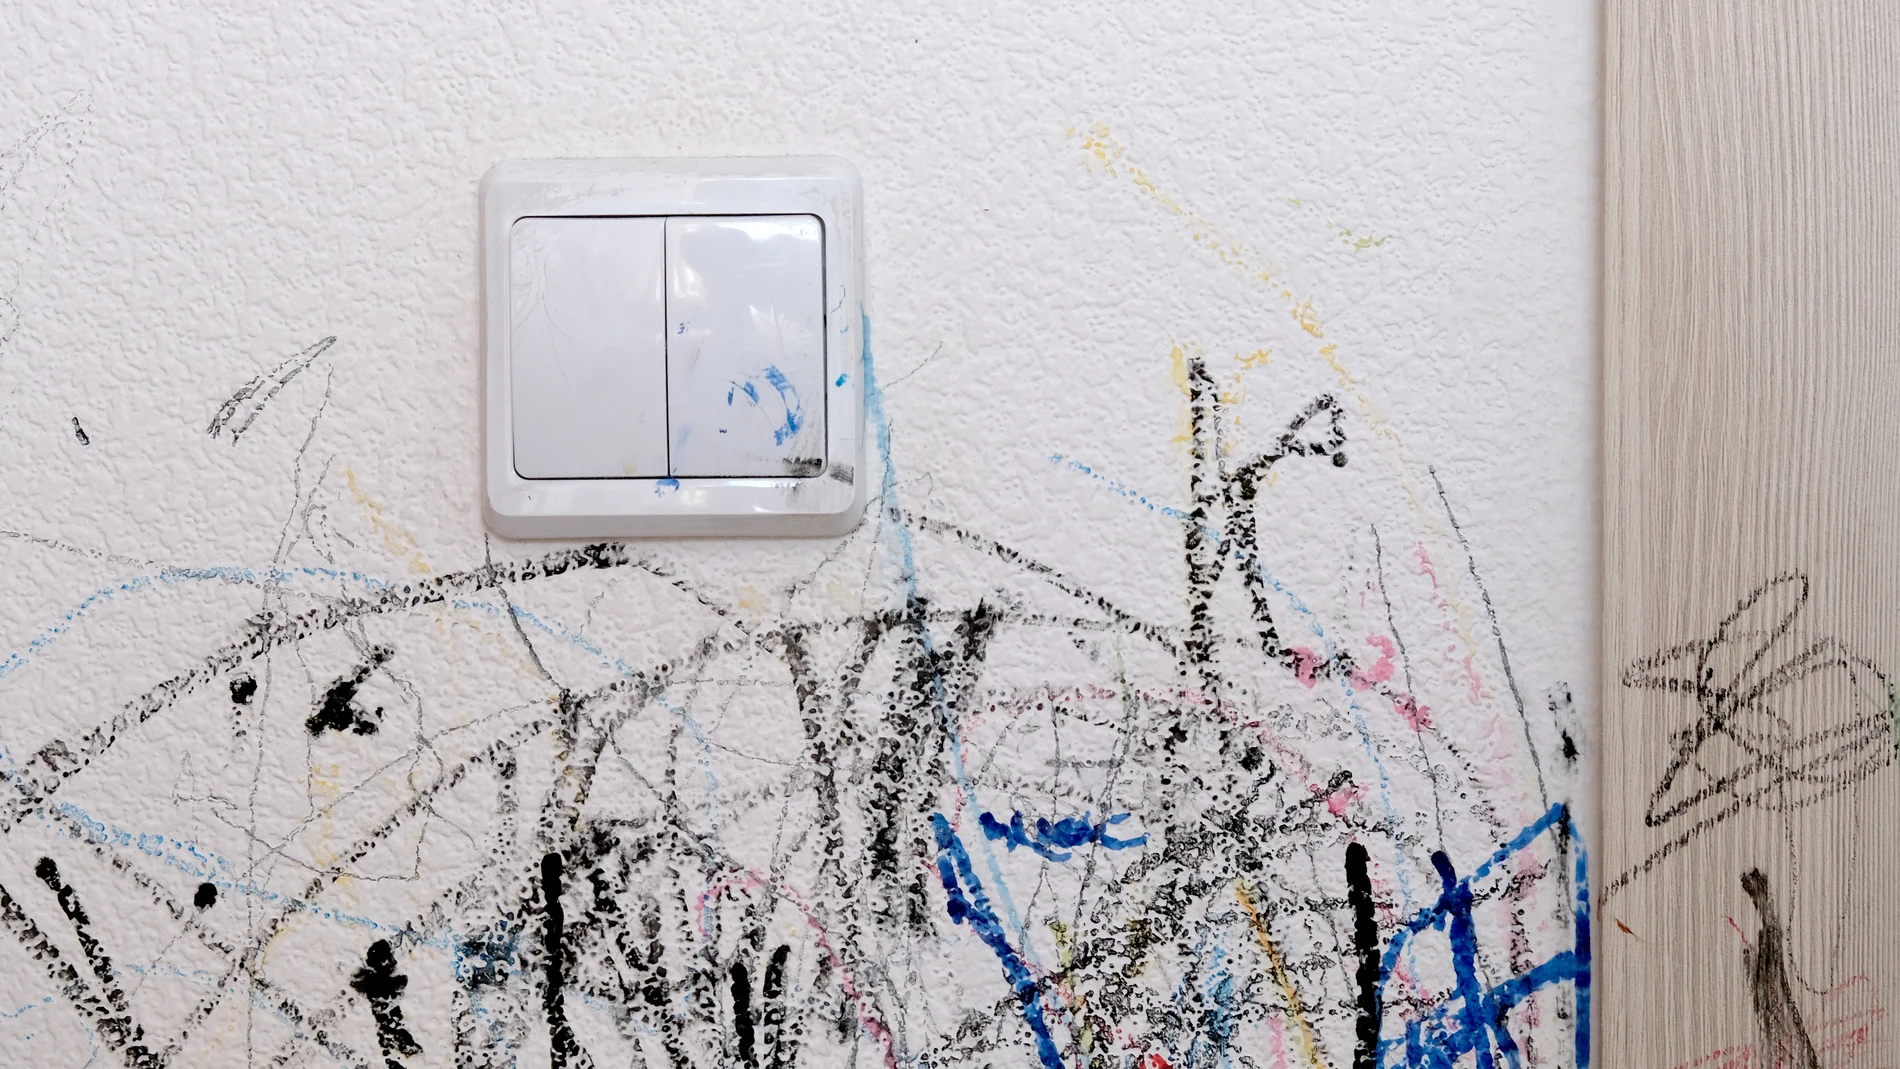 Cómo sacar la humedad de la pared antes de pintar?